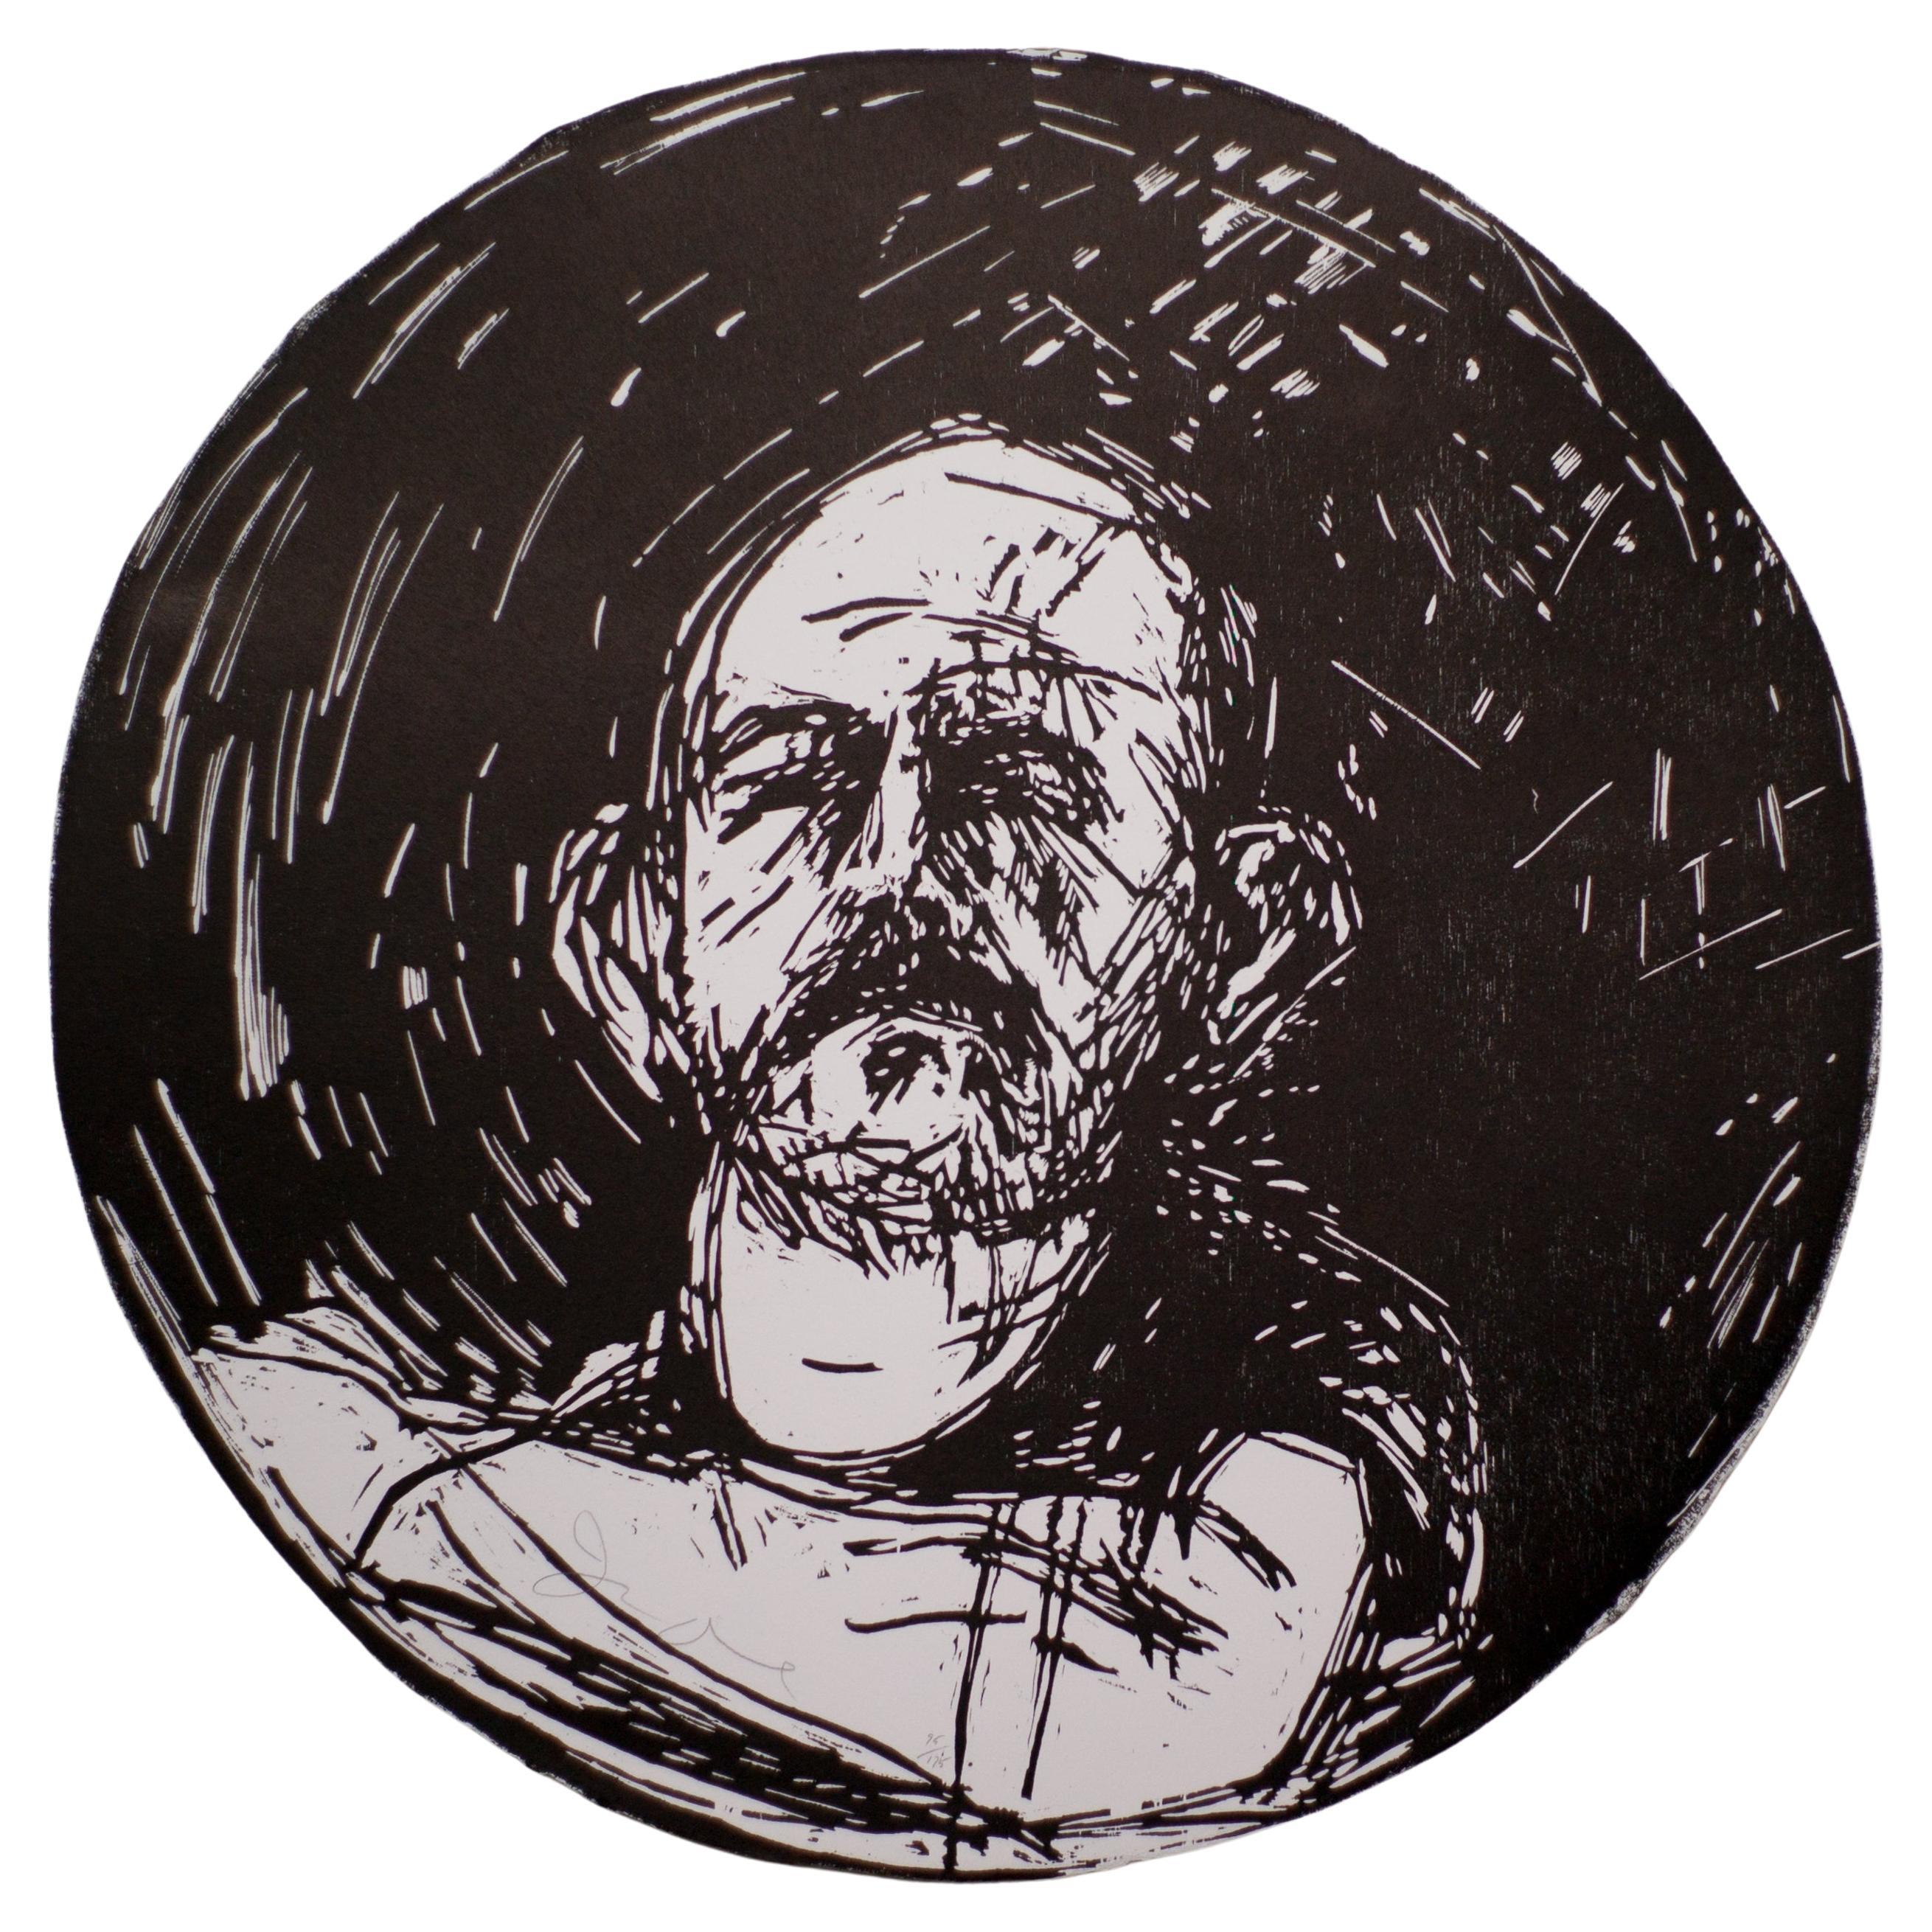 Jim Dine, Ohne Titel, aus "Self-Portrait in a Convex Mirror" (Selbstportrait im konvexen Spiegel)